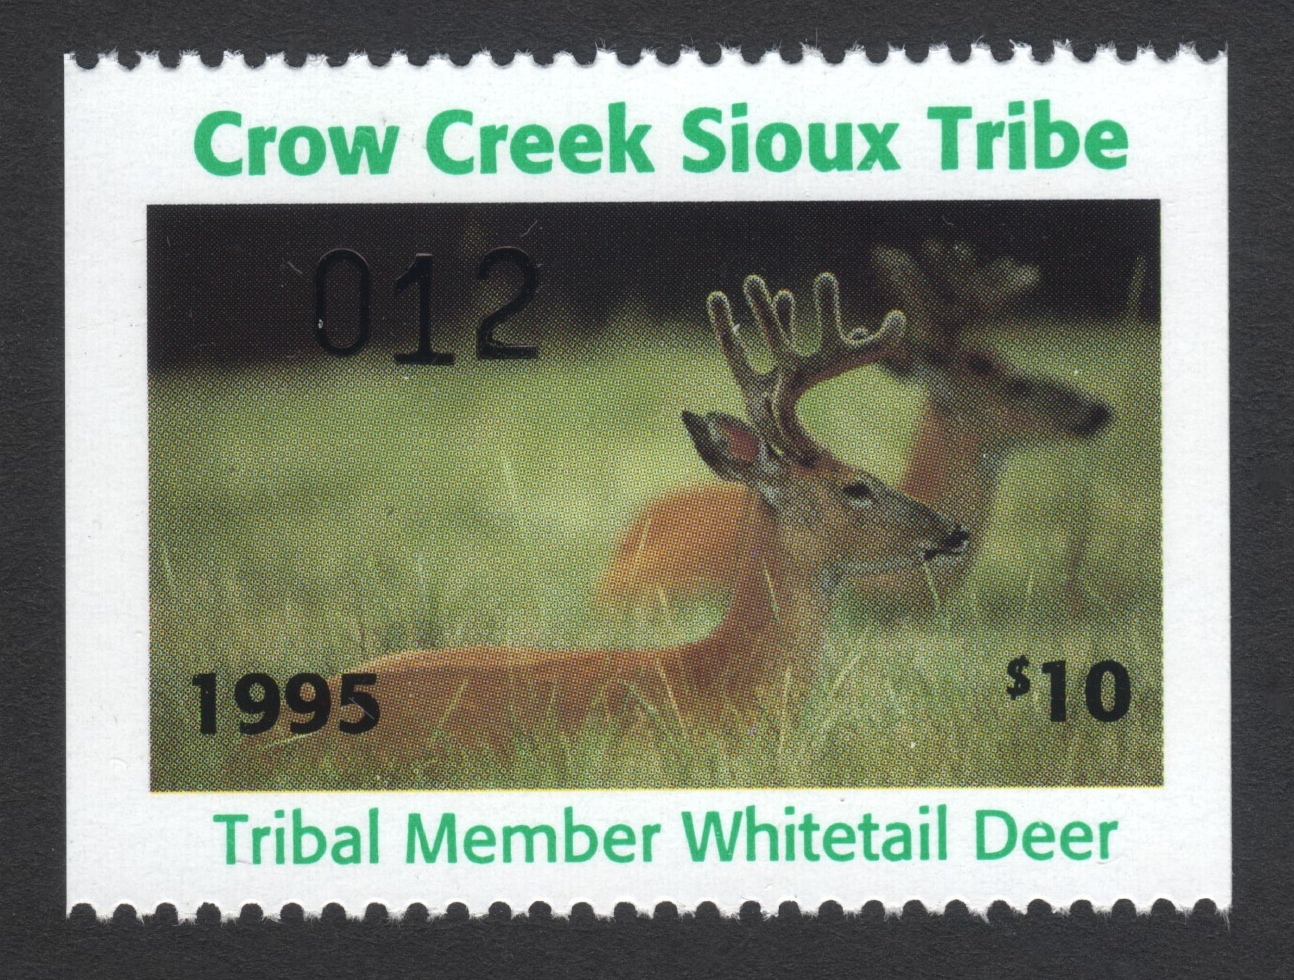 1995 Crow Creek Tribal Member Whitetail Deer